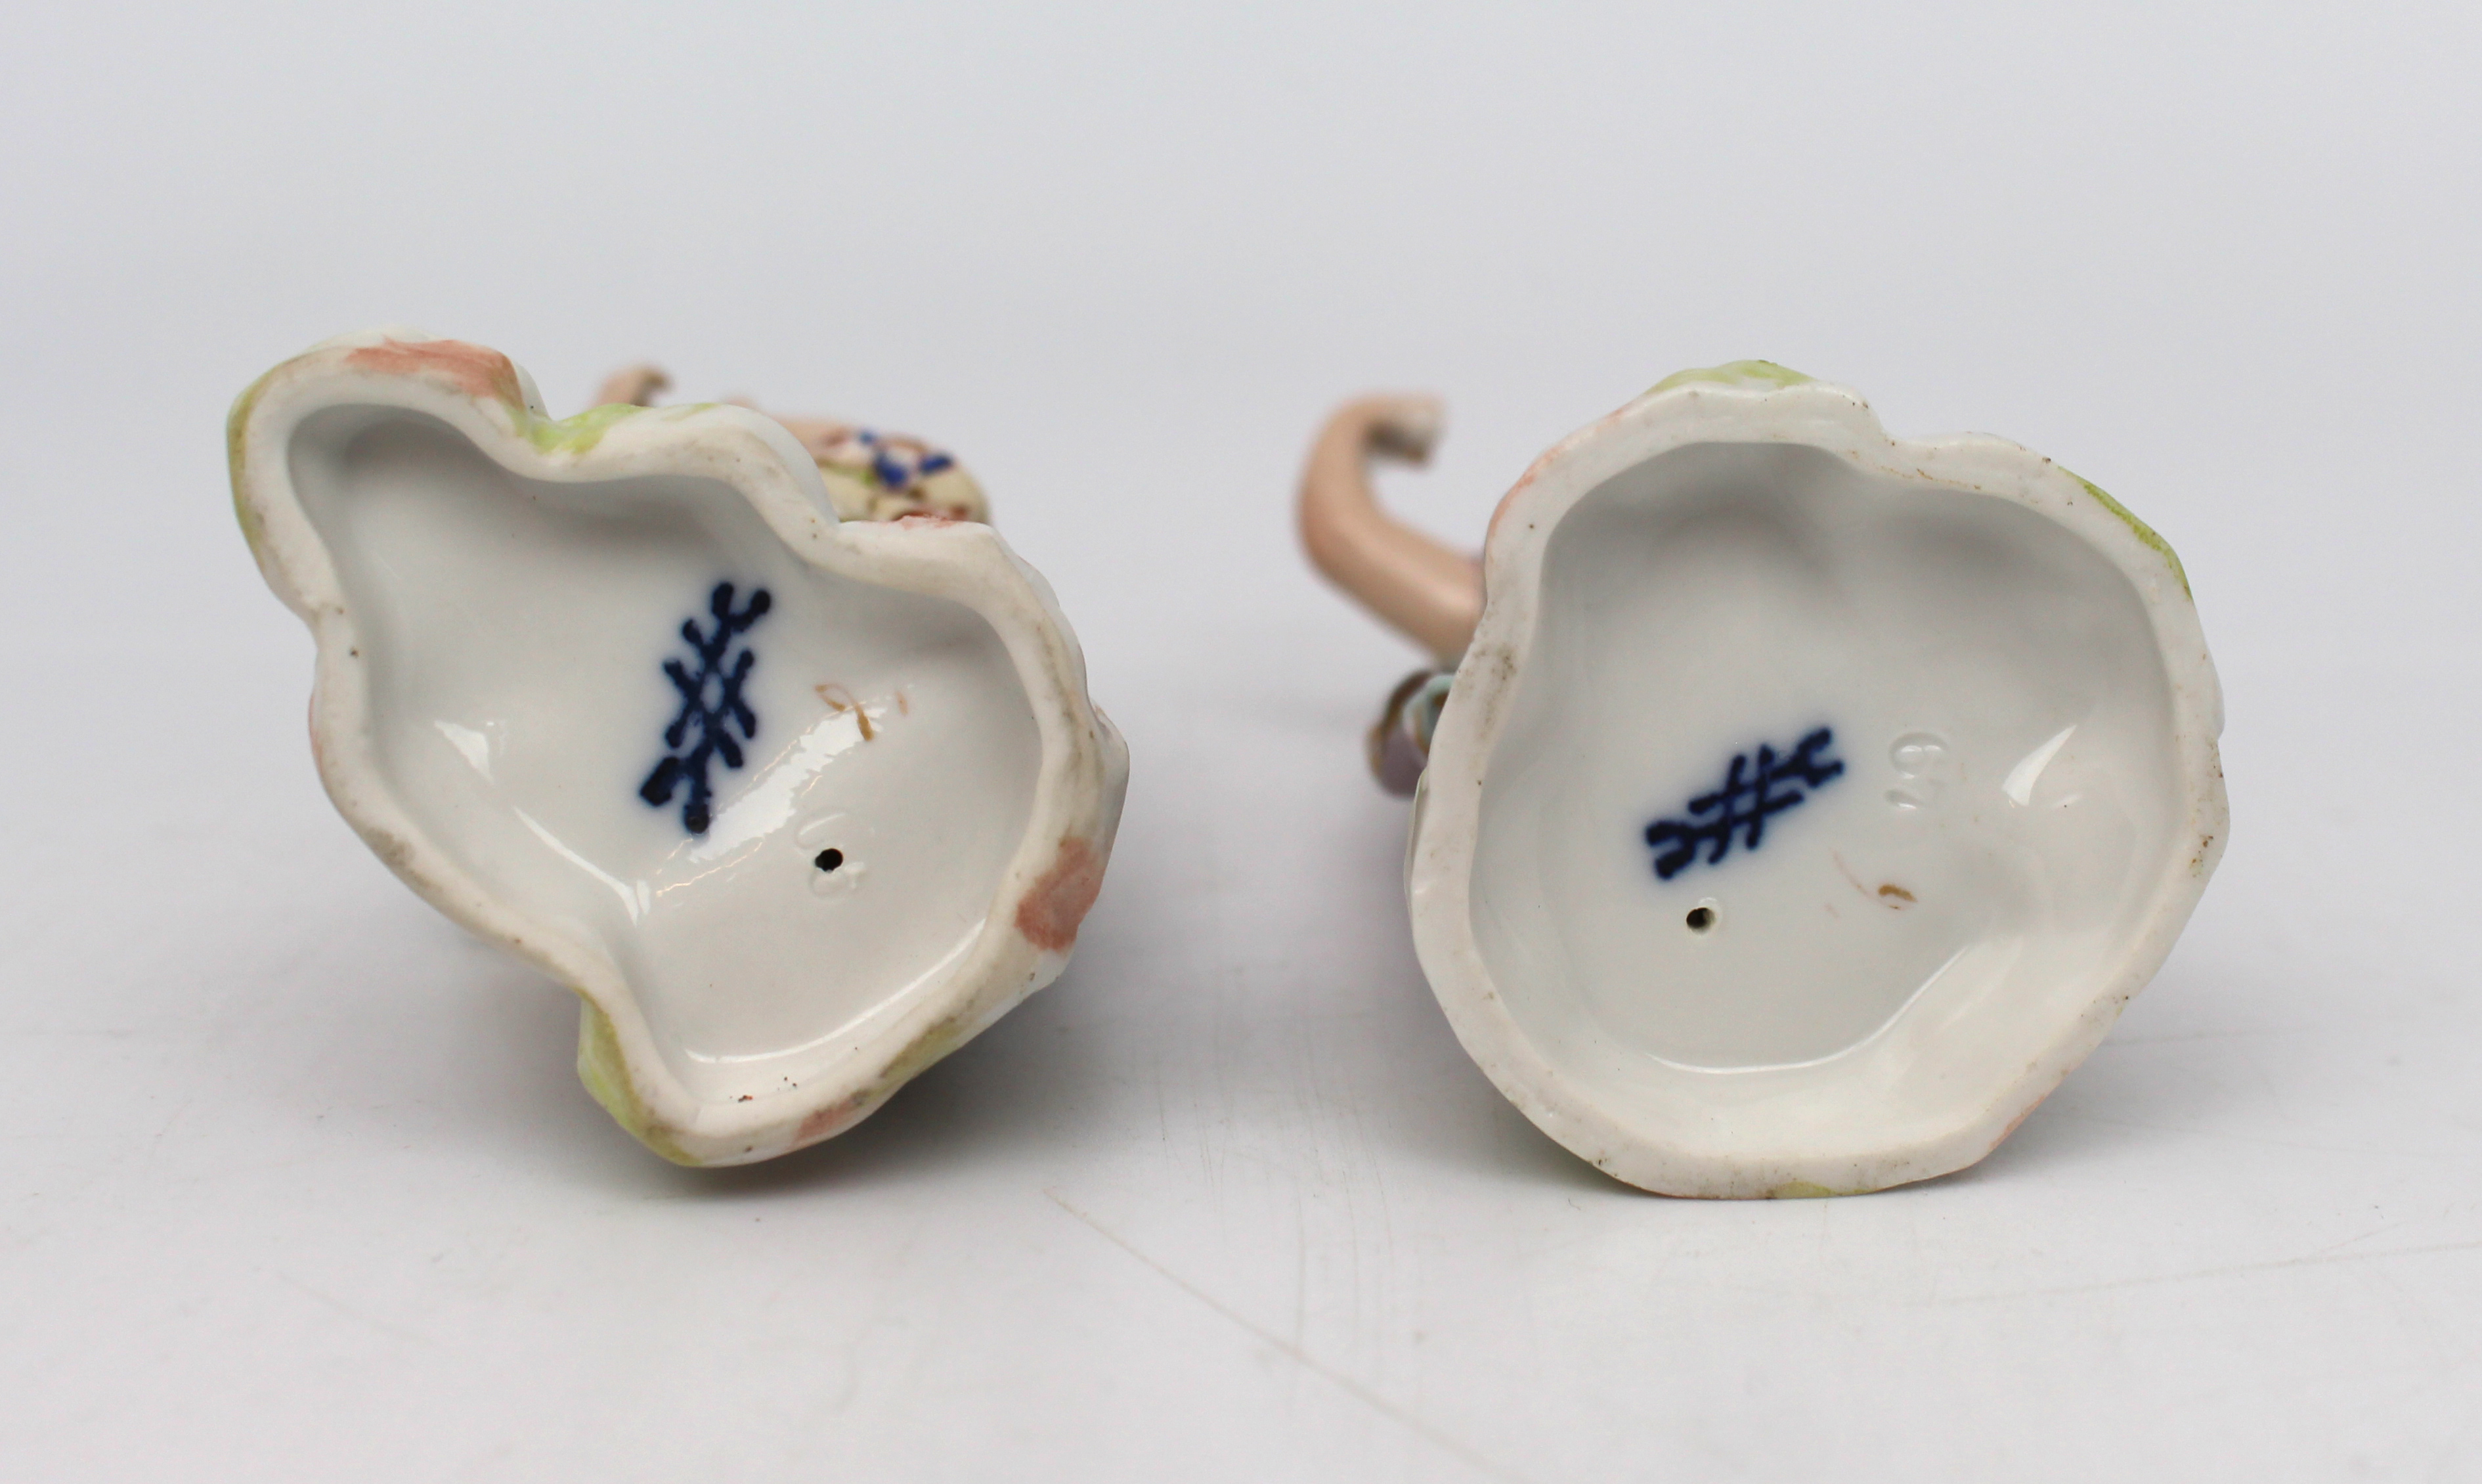 Pair of Vintage German Porcelain Figurines - Image 2 of 2